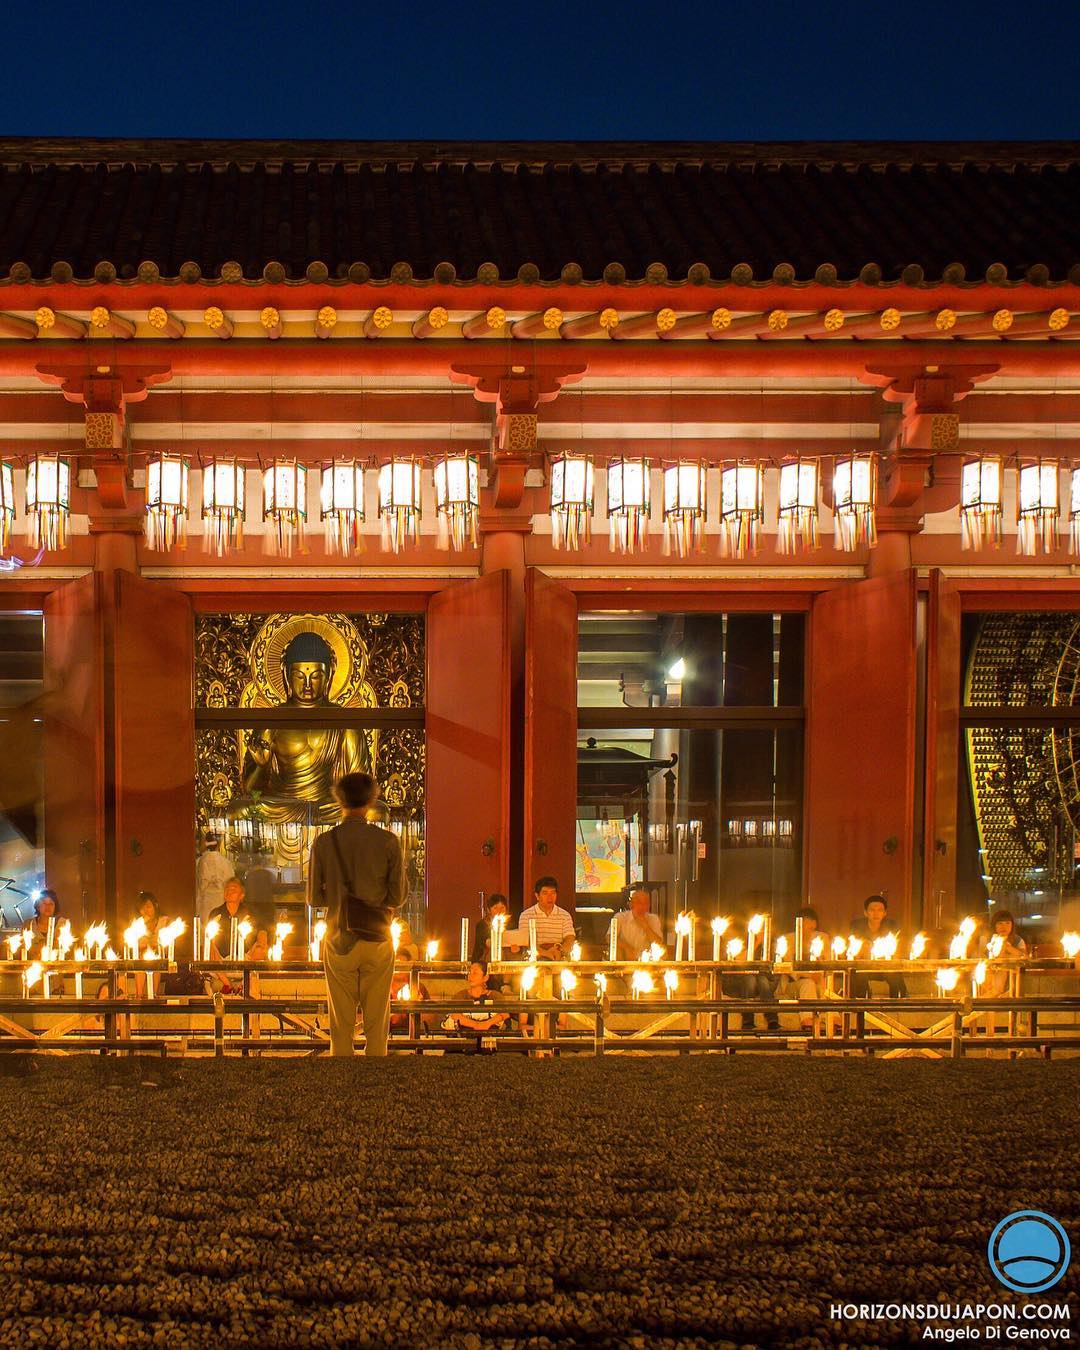 Il est temps de se retrouver face à Bouddha pour commémorer les âmes défuntes qui accompagnent notre vivant
#osakasafari #japonsafari